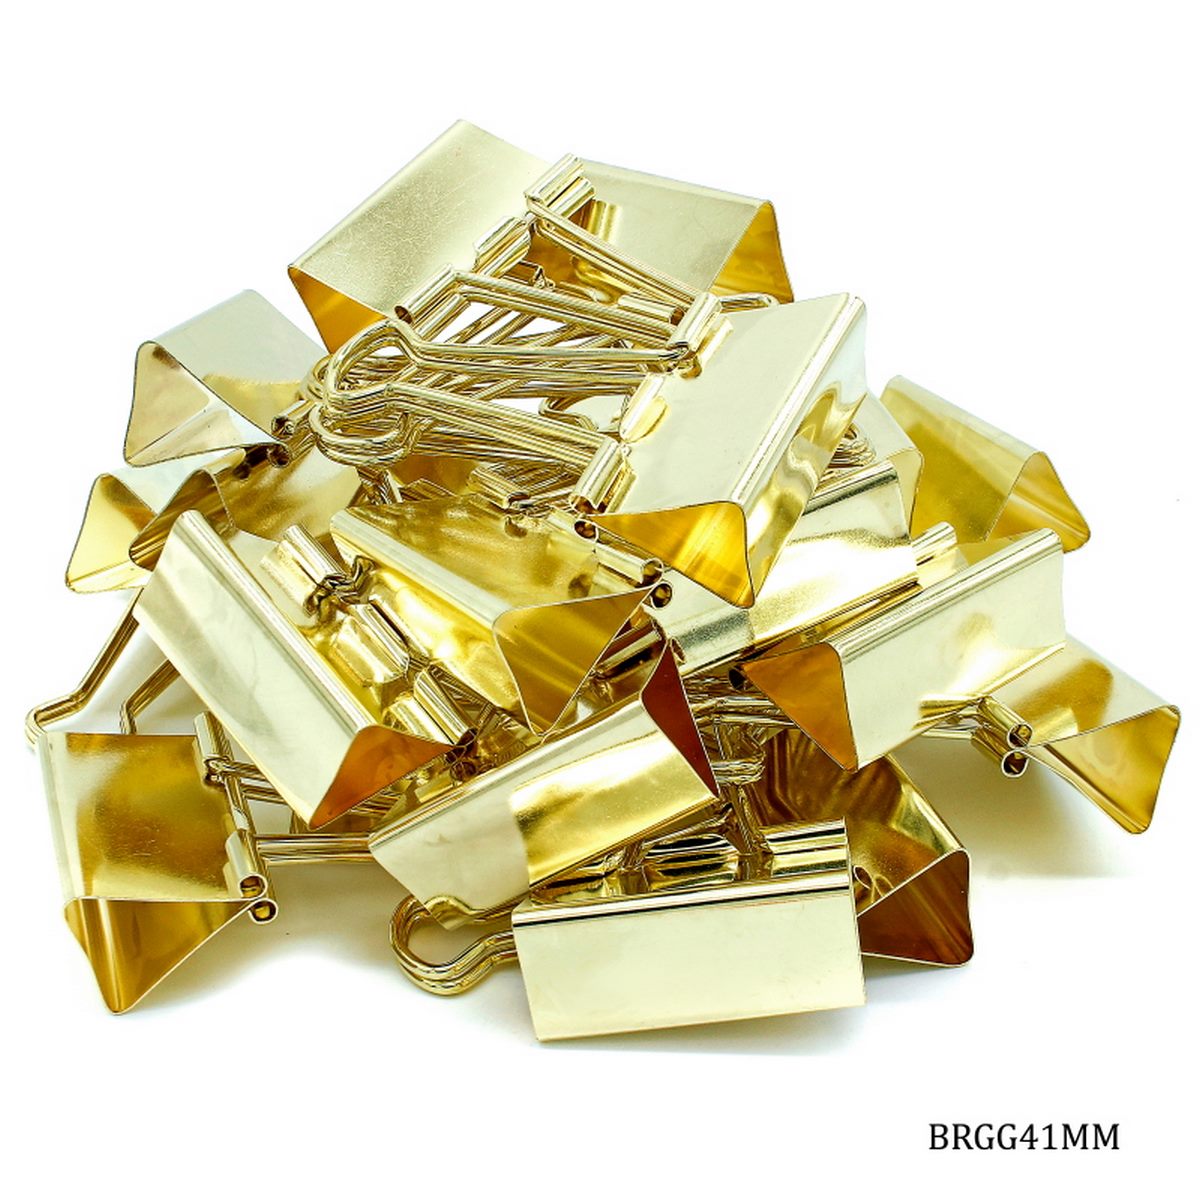 jags-mumbai Binder Clips & Pins Regal Gold Extra-Large Binder Clips - 41mm (24pcs Box)